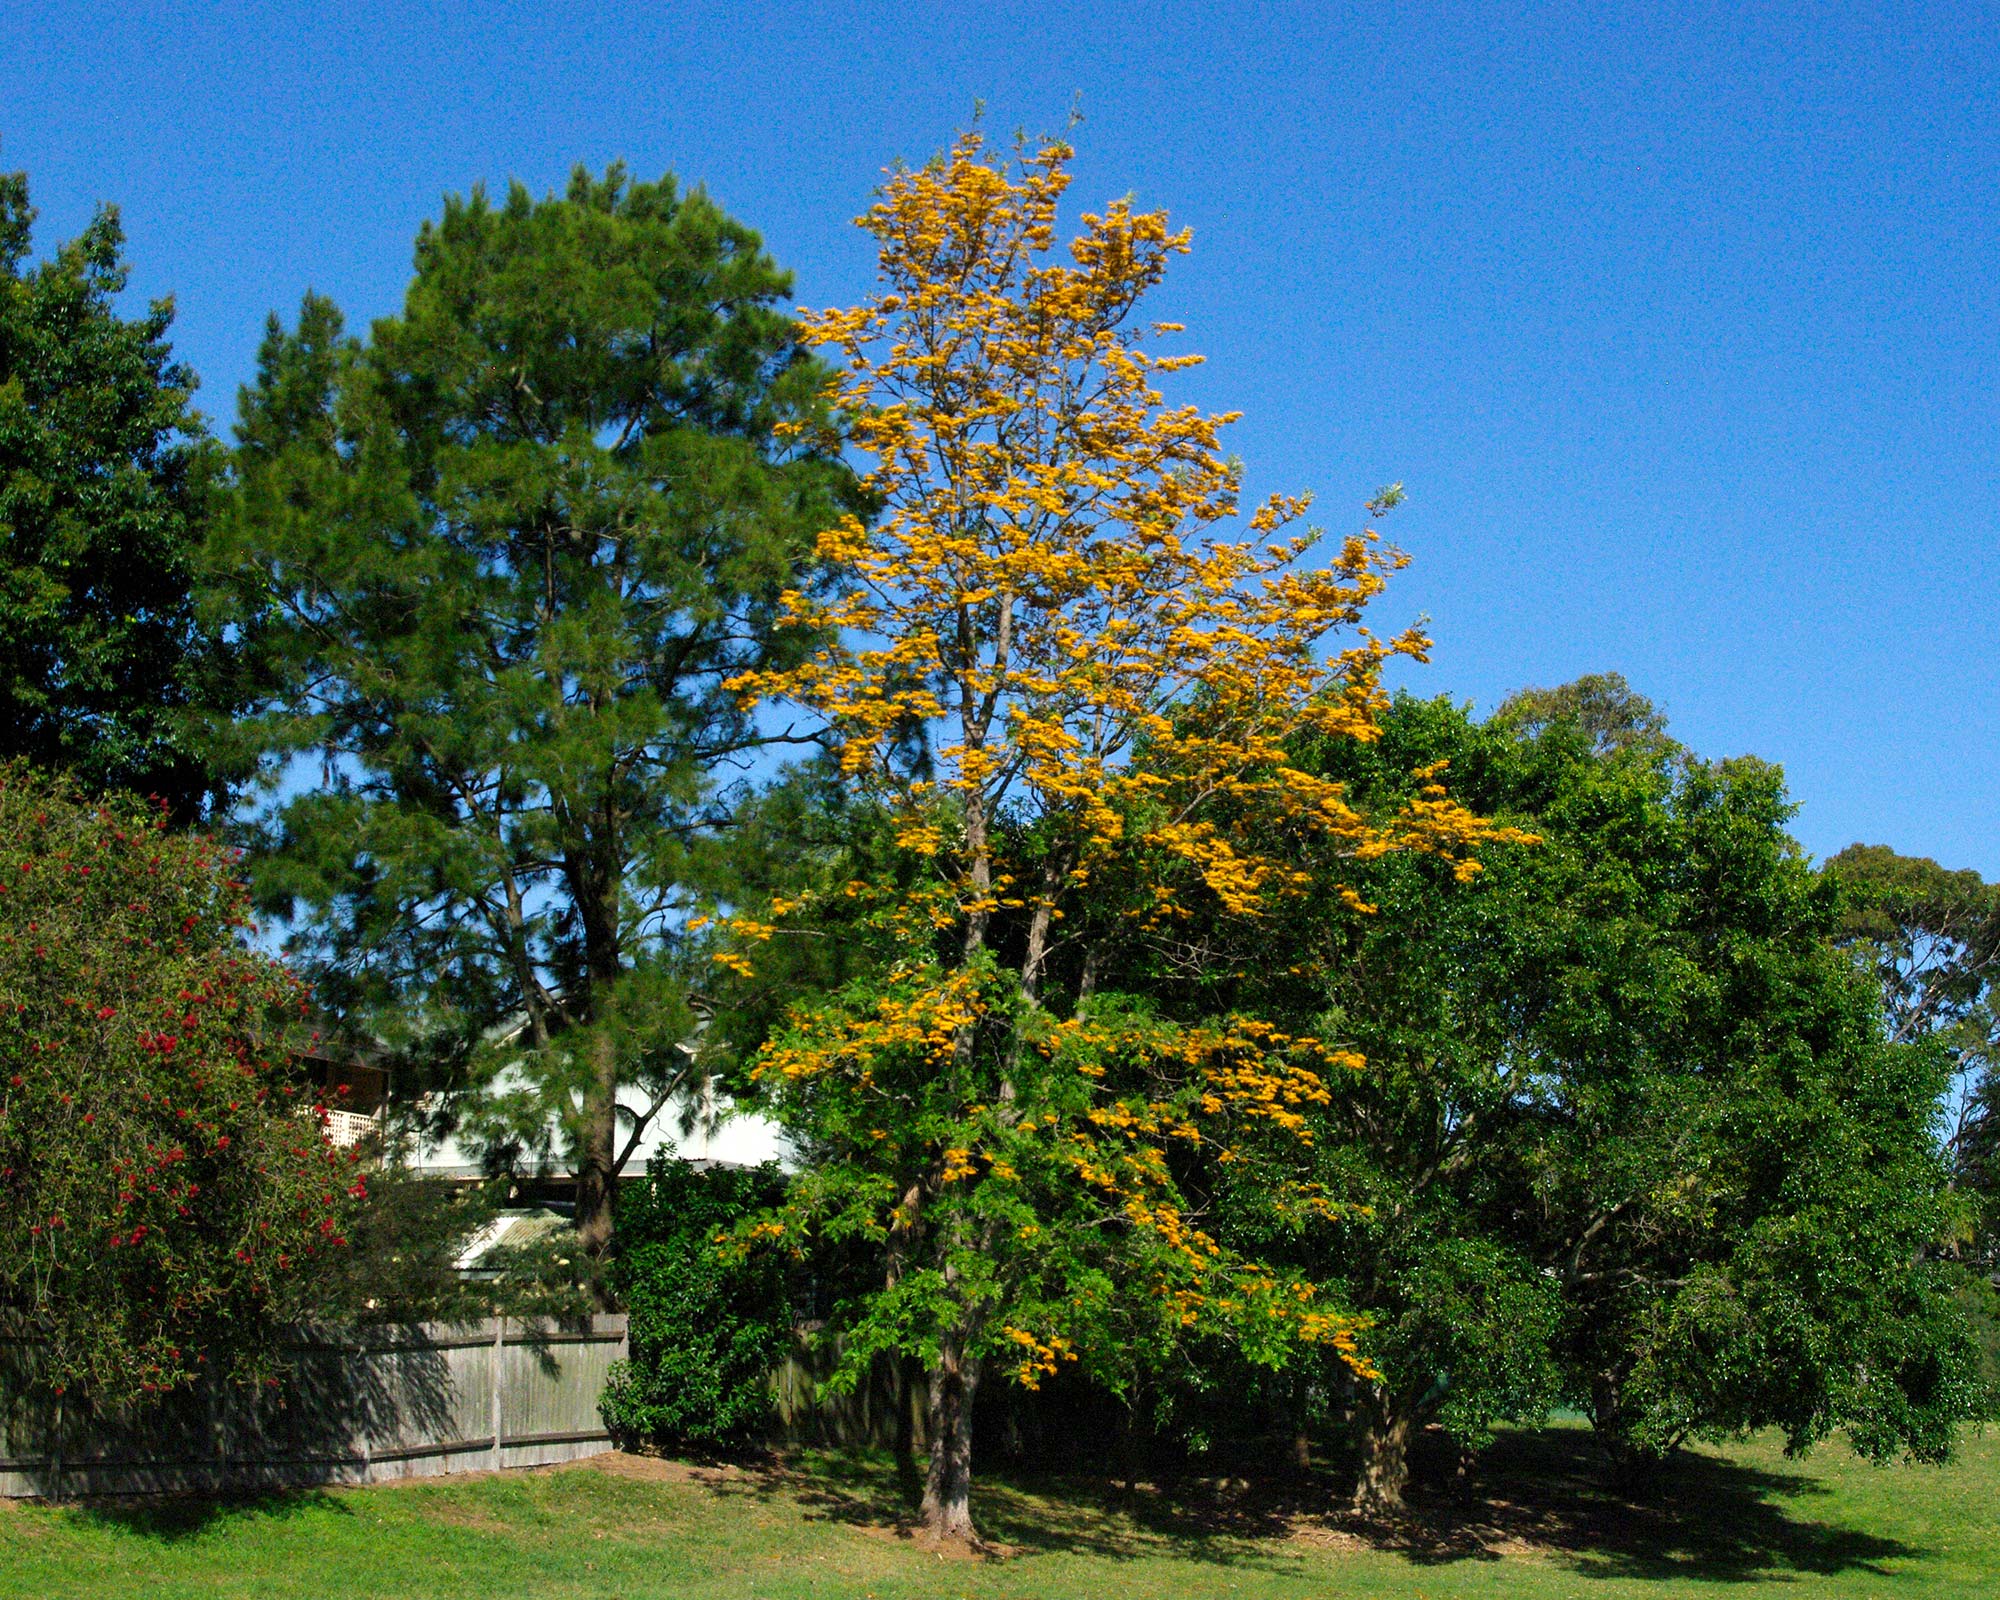 Grevillea Robusta - Silky Oak - large tree